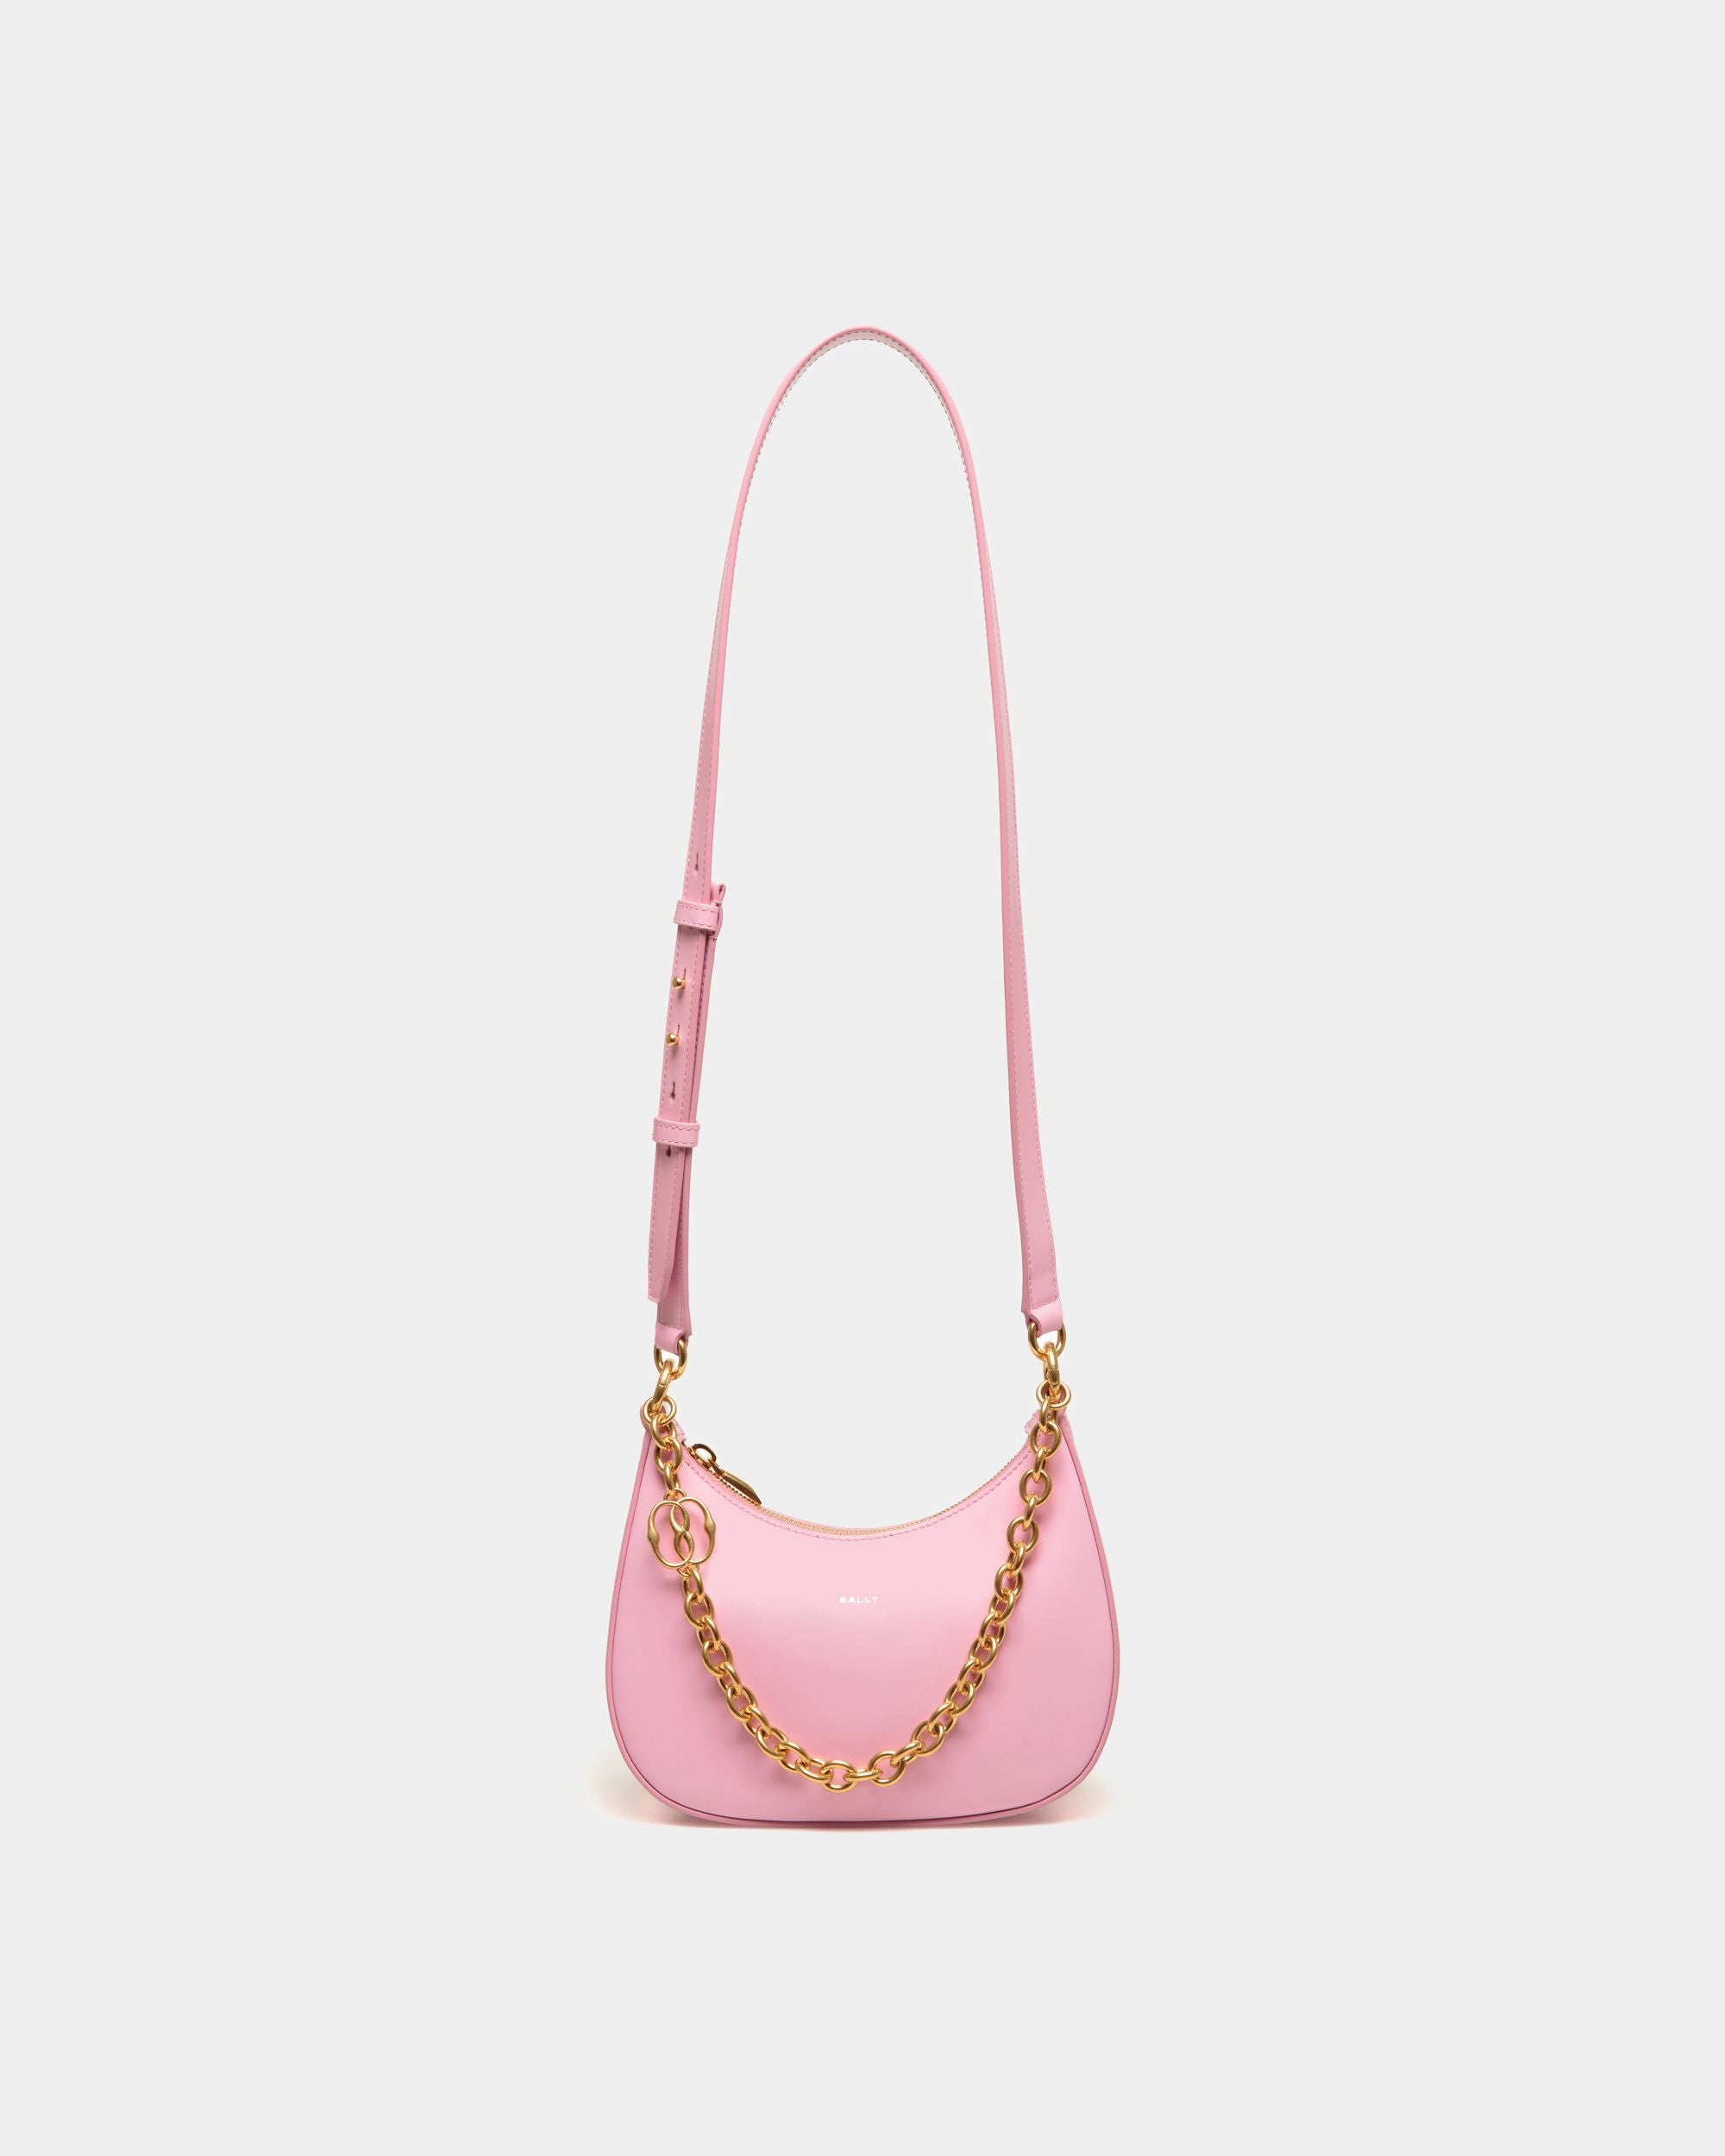 Emblem | Mini sac à bandoulière pour femme en cuir brossé rose | Bally | Still Life Devant